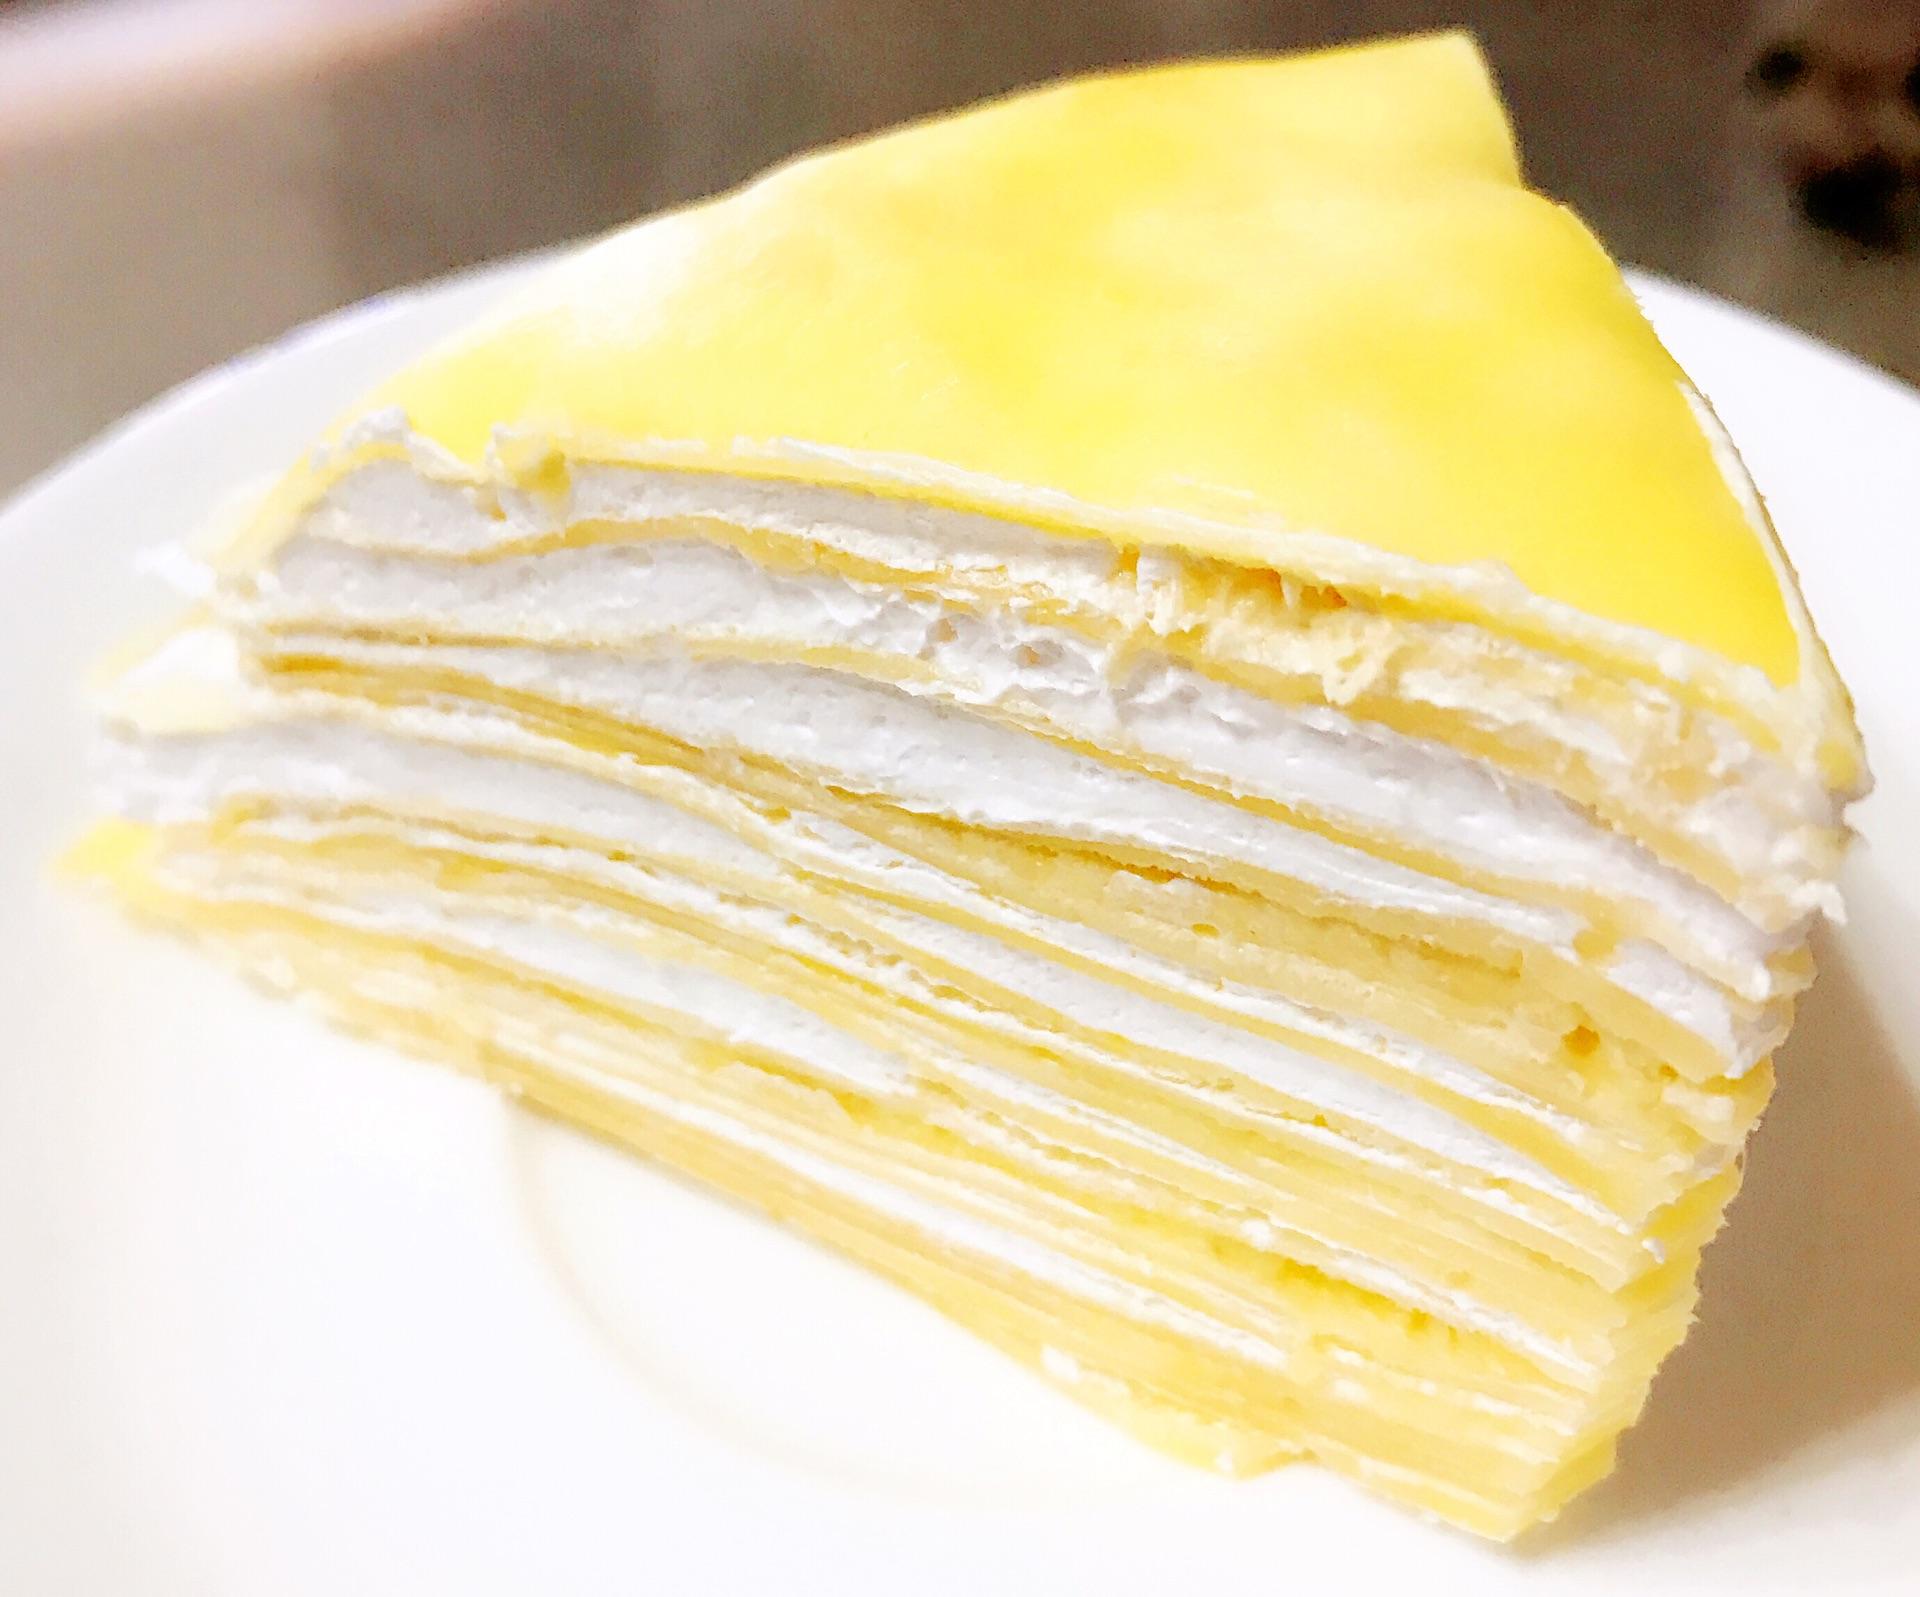 法式榴莲千层蛋糕 – Durian Mille Crepe | Entertainment Digest